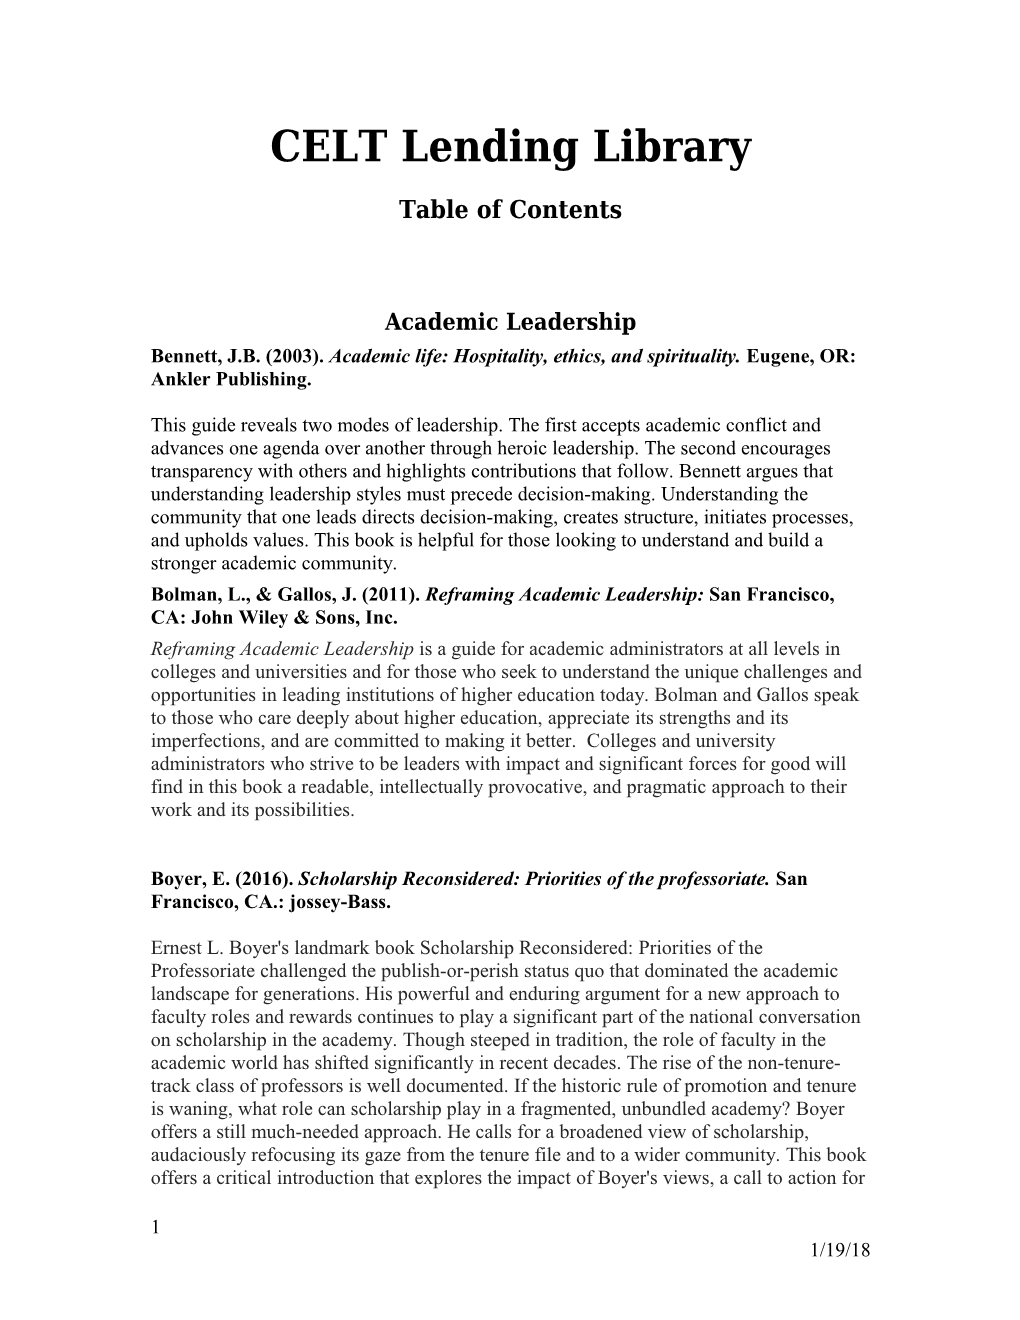 CELT Lending Library